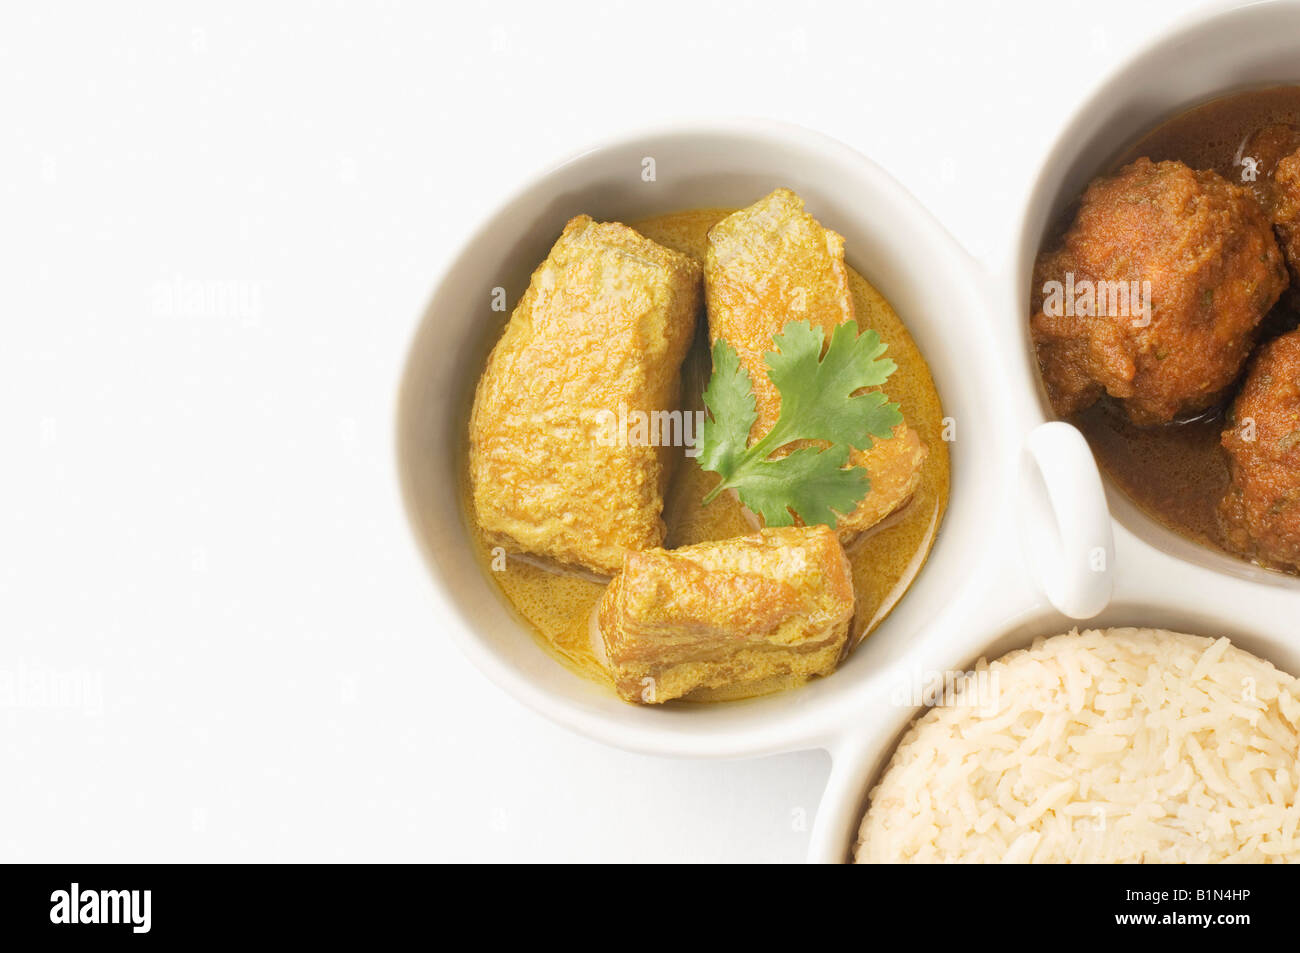 Close-up du riz bouilli et les boulettes avec curry de poisson servi dans des bols Banque D'Images